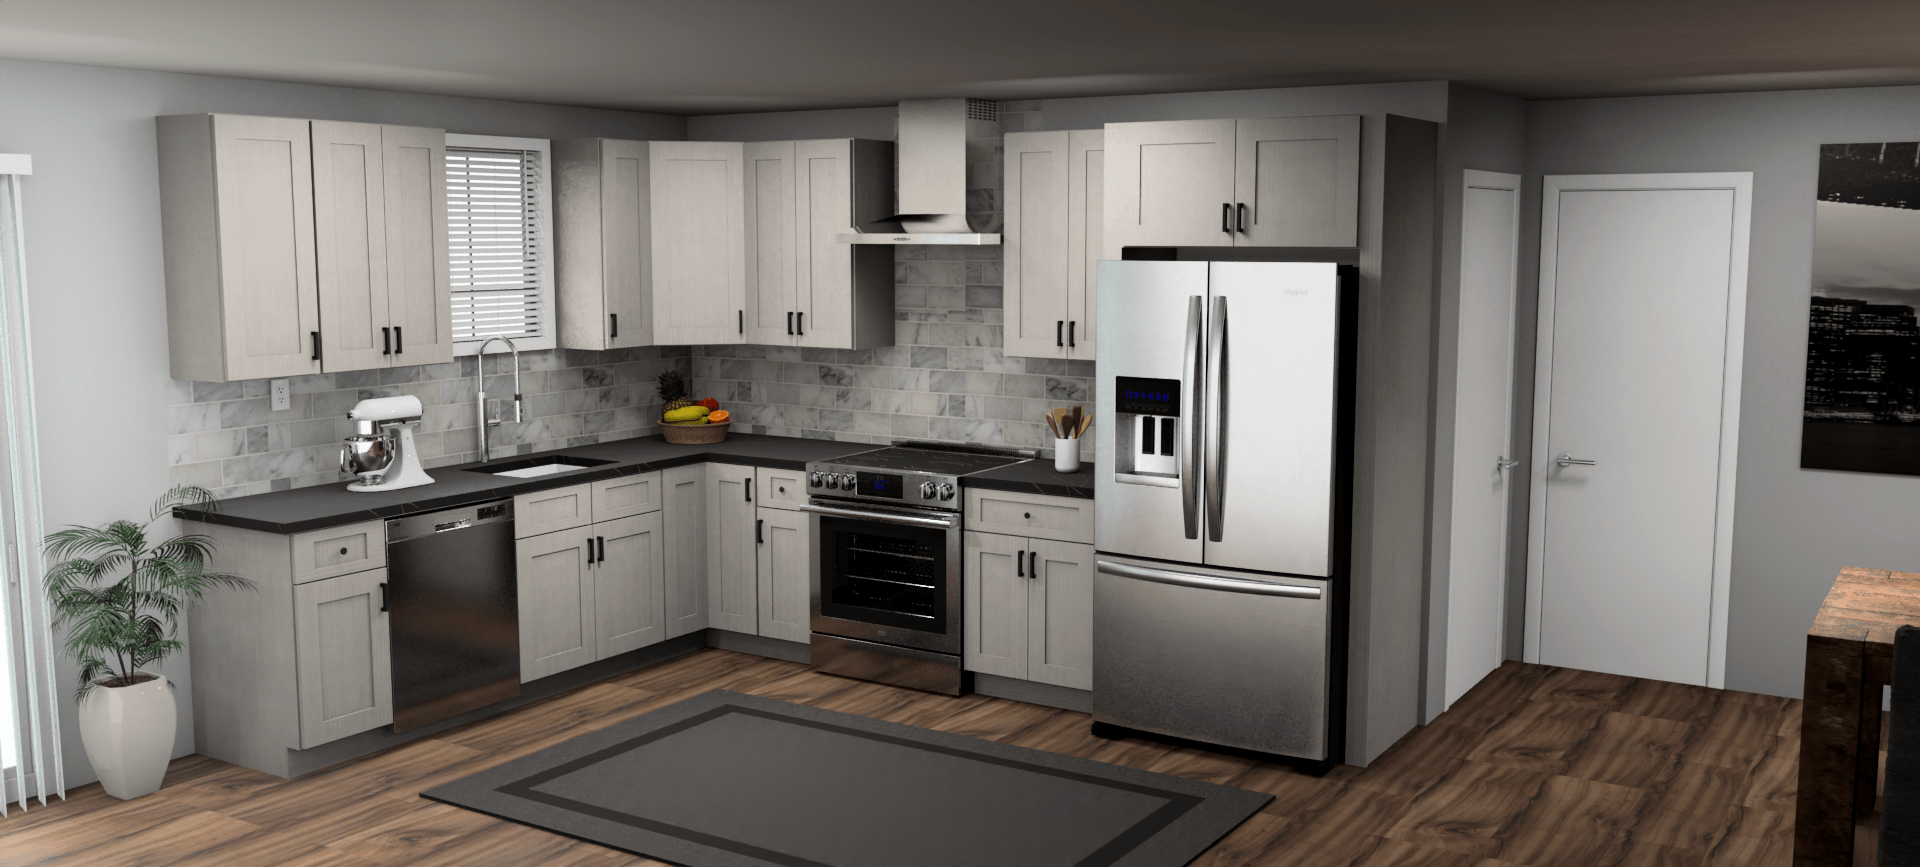 Fabuwood Allure Galaxy Horizon 9 x 12 L Shaped Kitchen Main Layout Photo